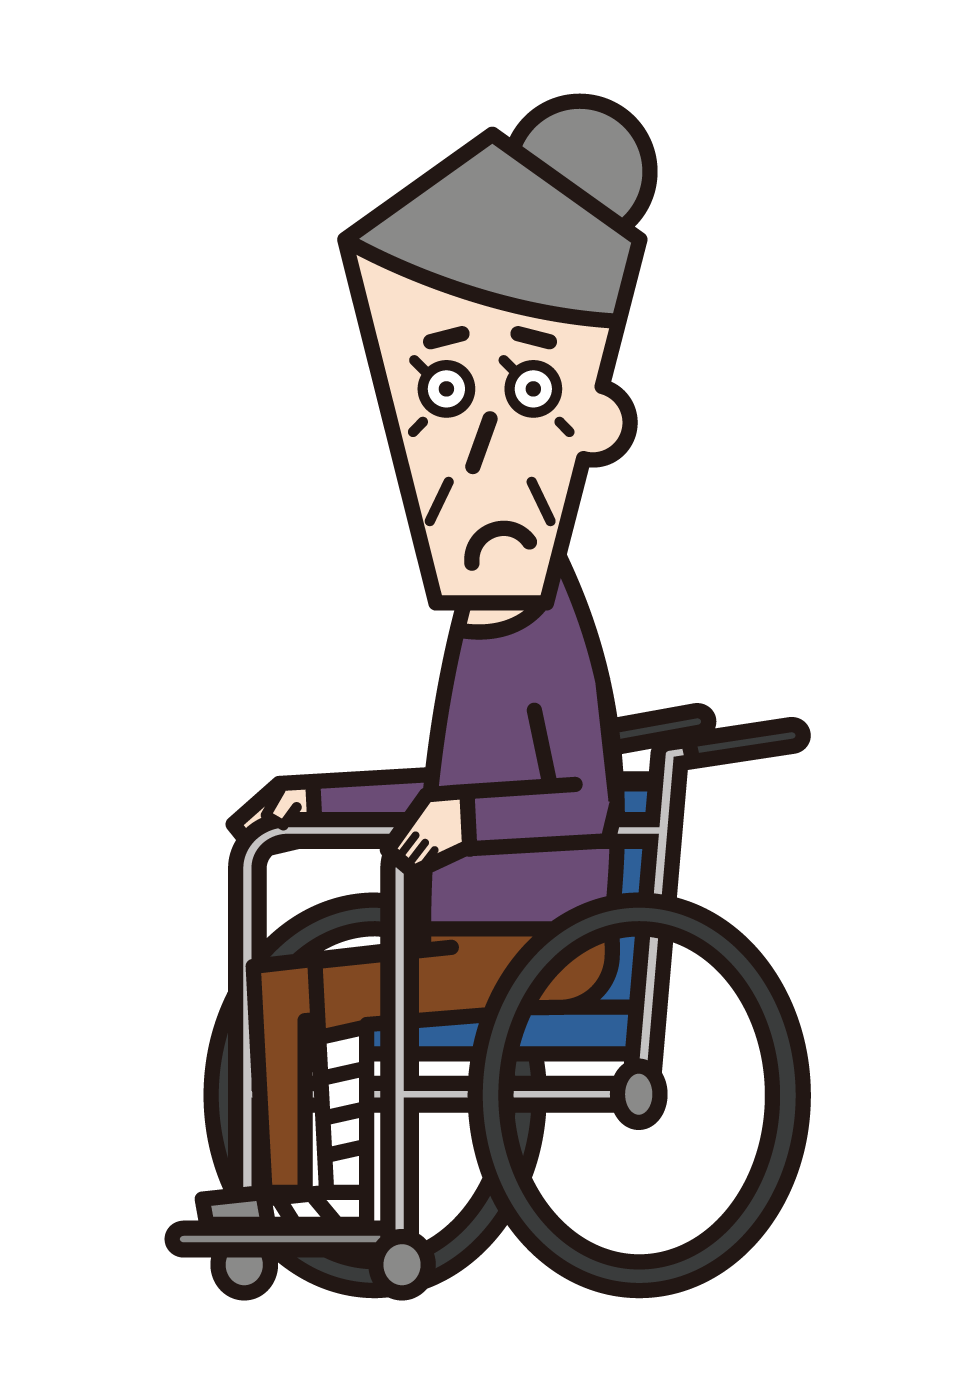 다리가 부러진 휠체어를 탄 사람(할머니)의 그림